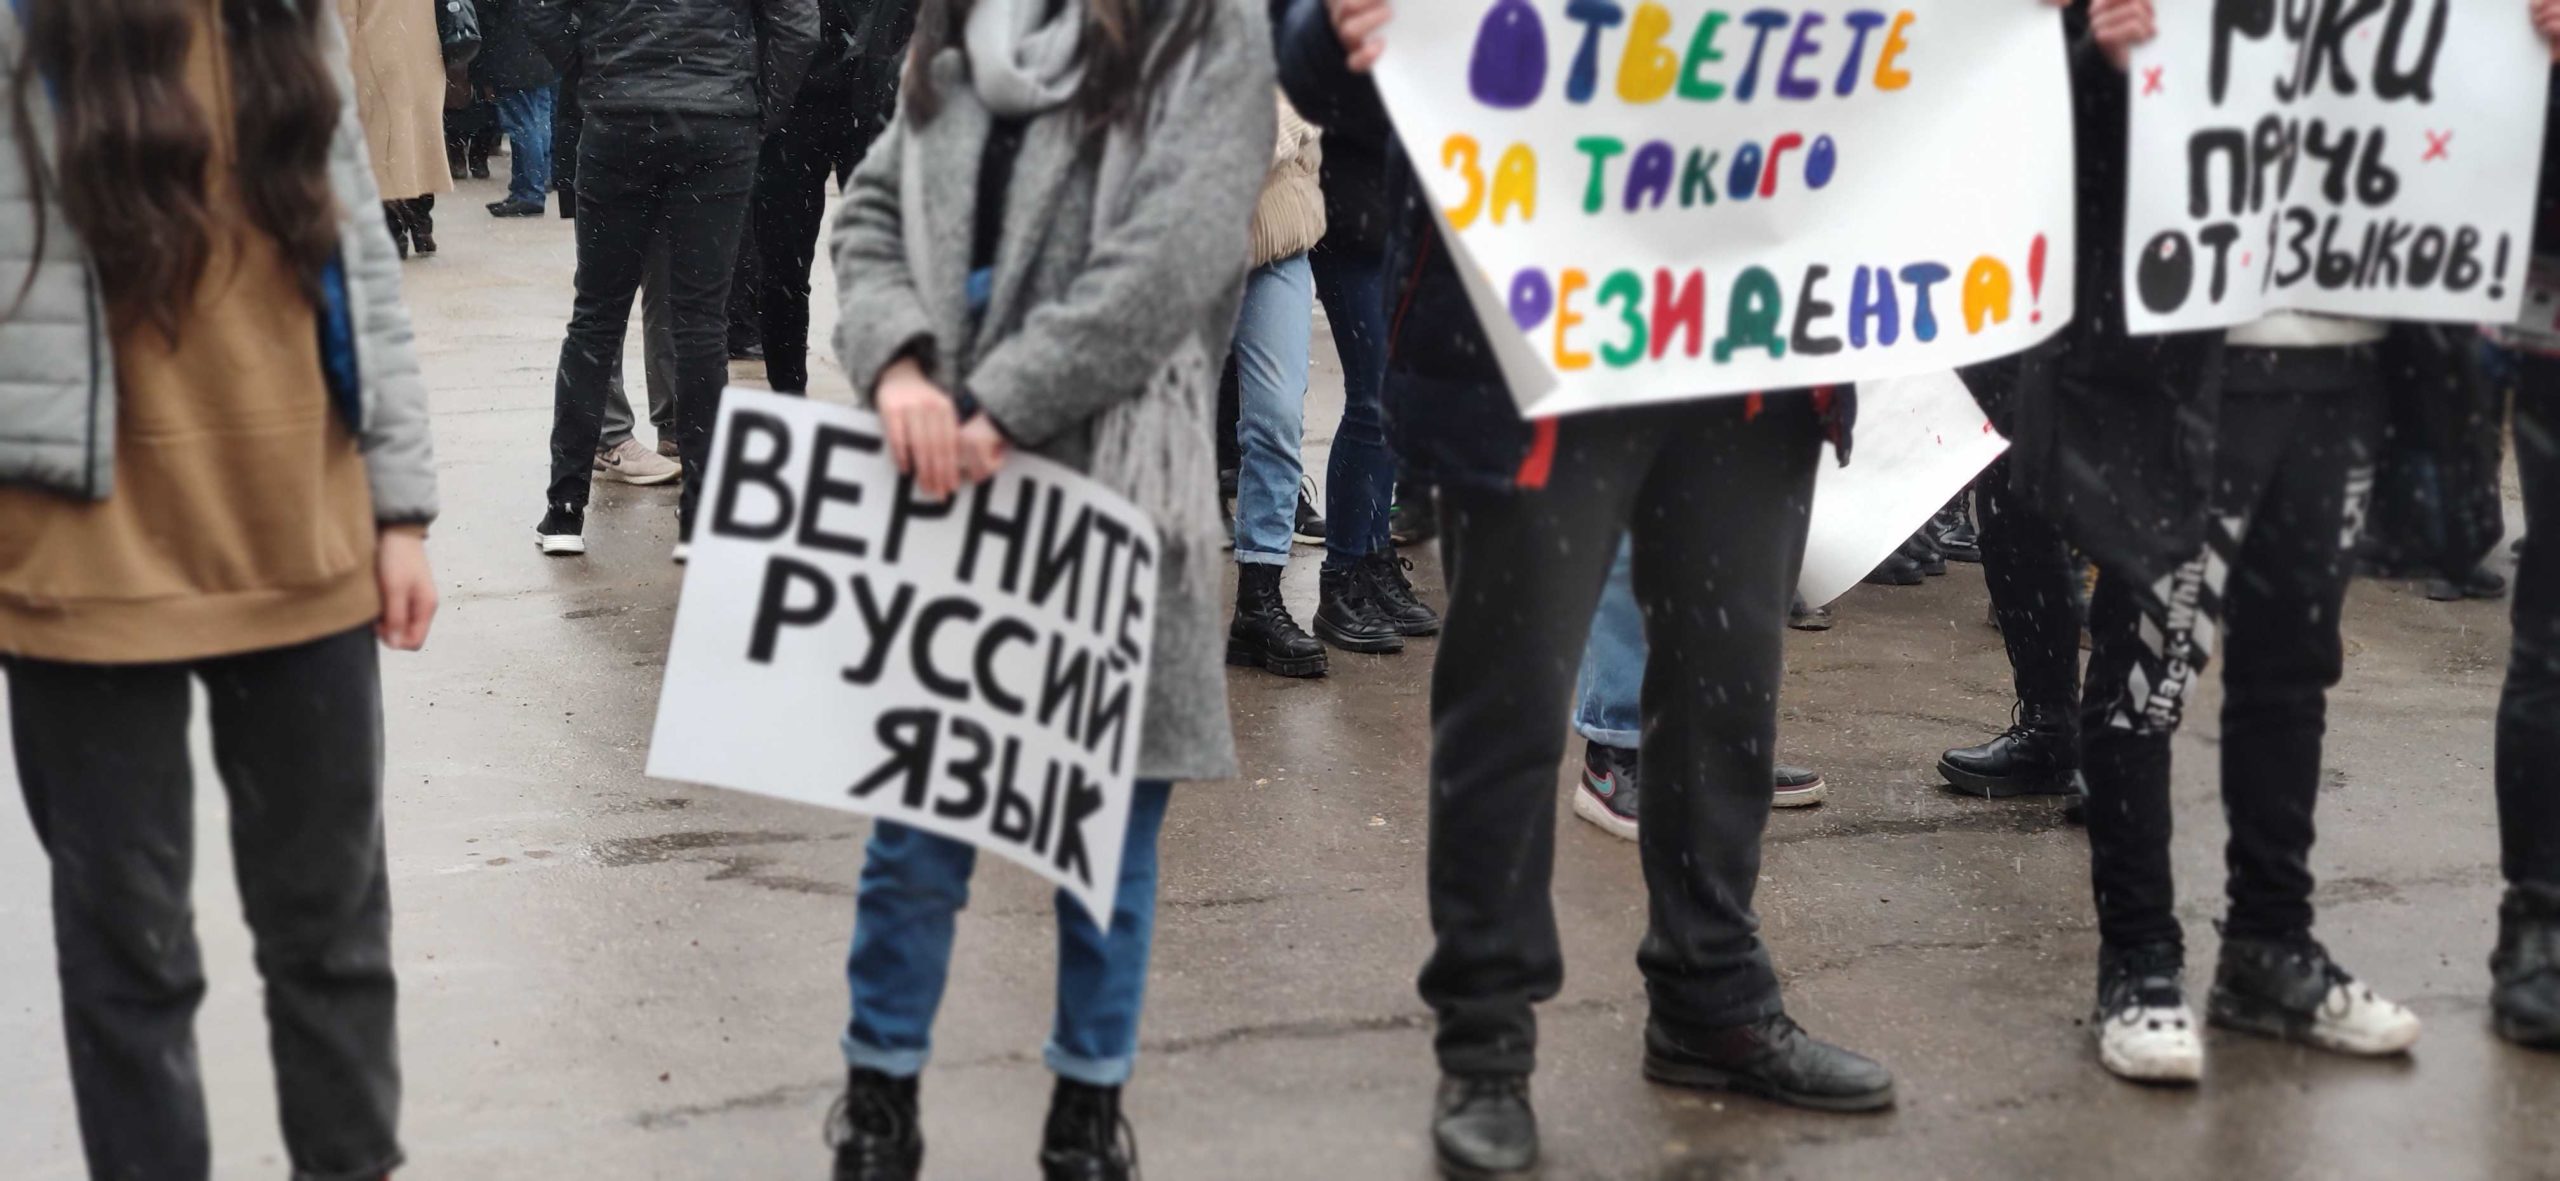 „Aduceți înapoi limba rusă”. Protest în sprijinul limbii ruse la Bălți (LIVE NM)